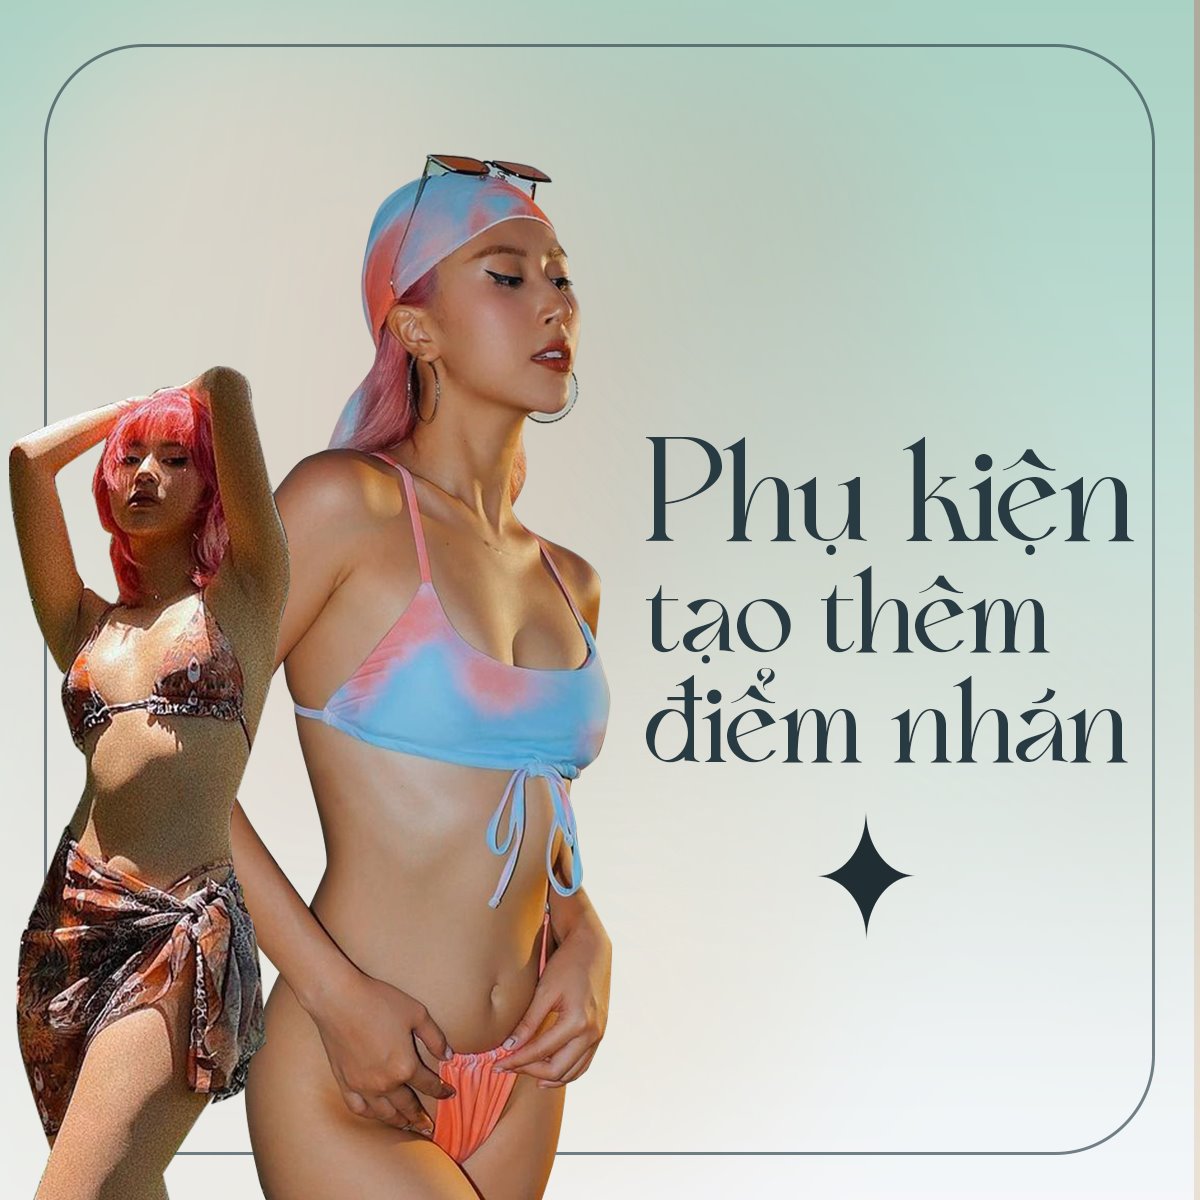 Quỳnh Anh Shyn tiết lộ cách mặc bikini siêu nhỏ, hot nhất là bộ ảnh tạo dáng giữa đàn bò - 6